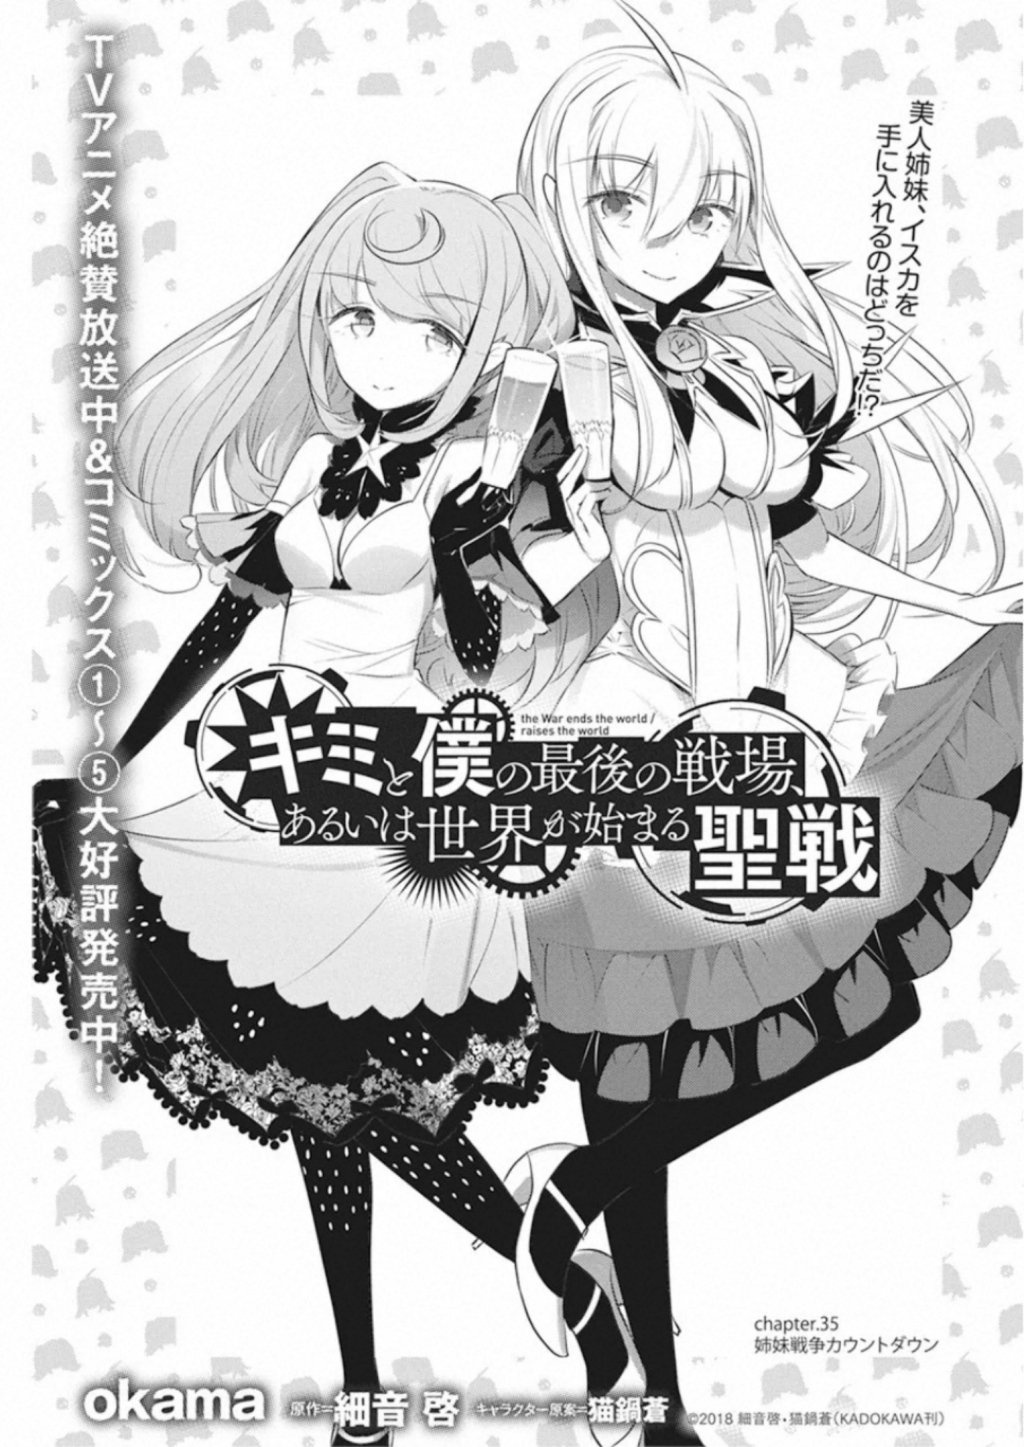 Kimi to Boku no Saigo no Senjou Vol. 2 Updated - That Novel Corner